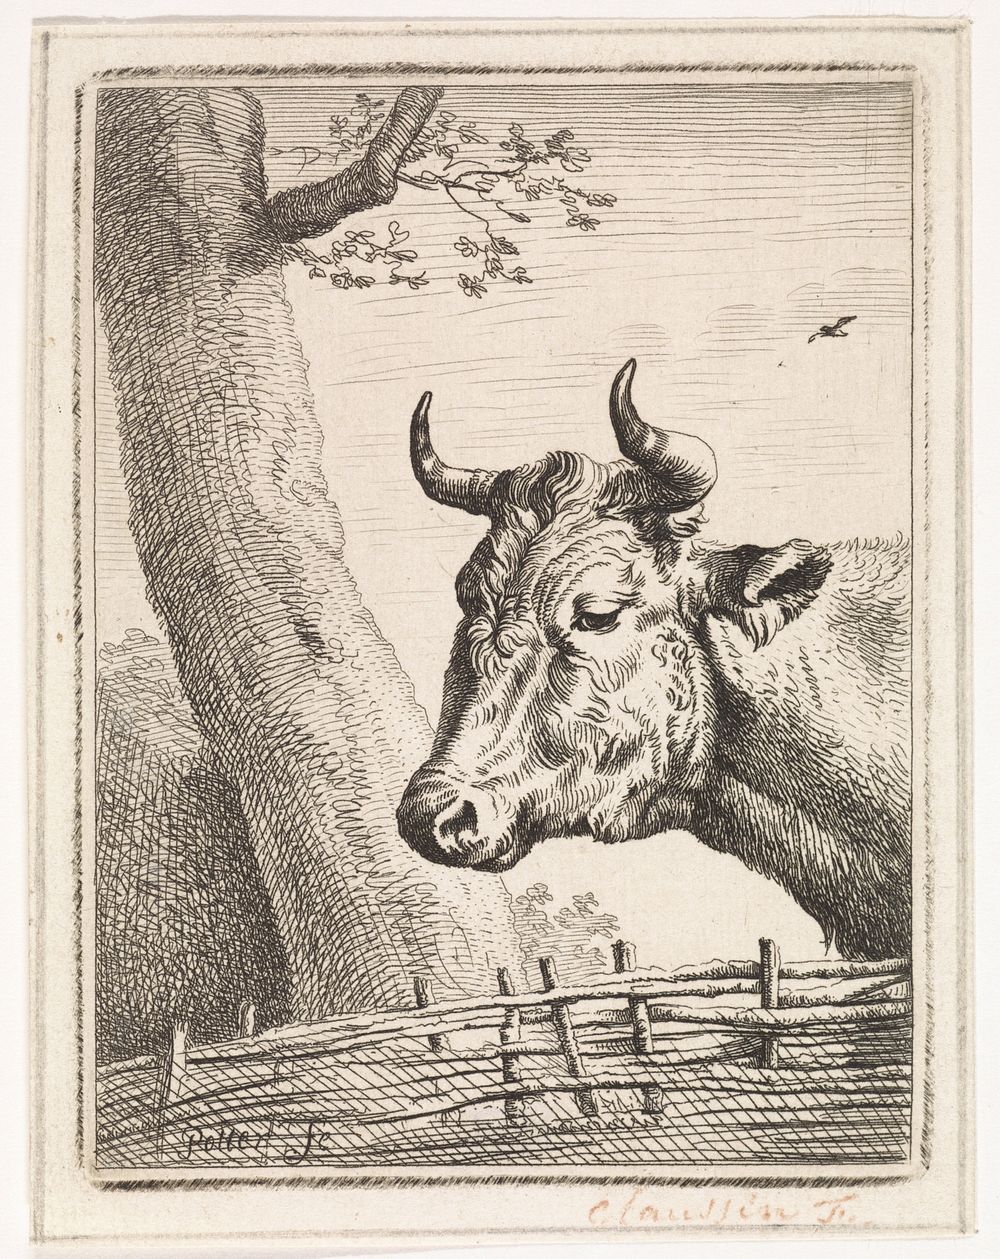 Kop van een koe (1805 - 1844) by Ignace Joseph de Claussin and Paulus Potter